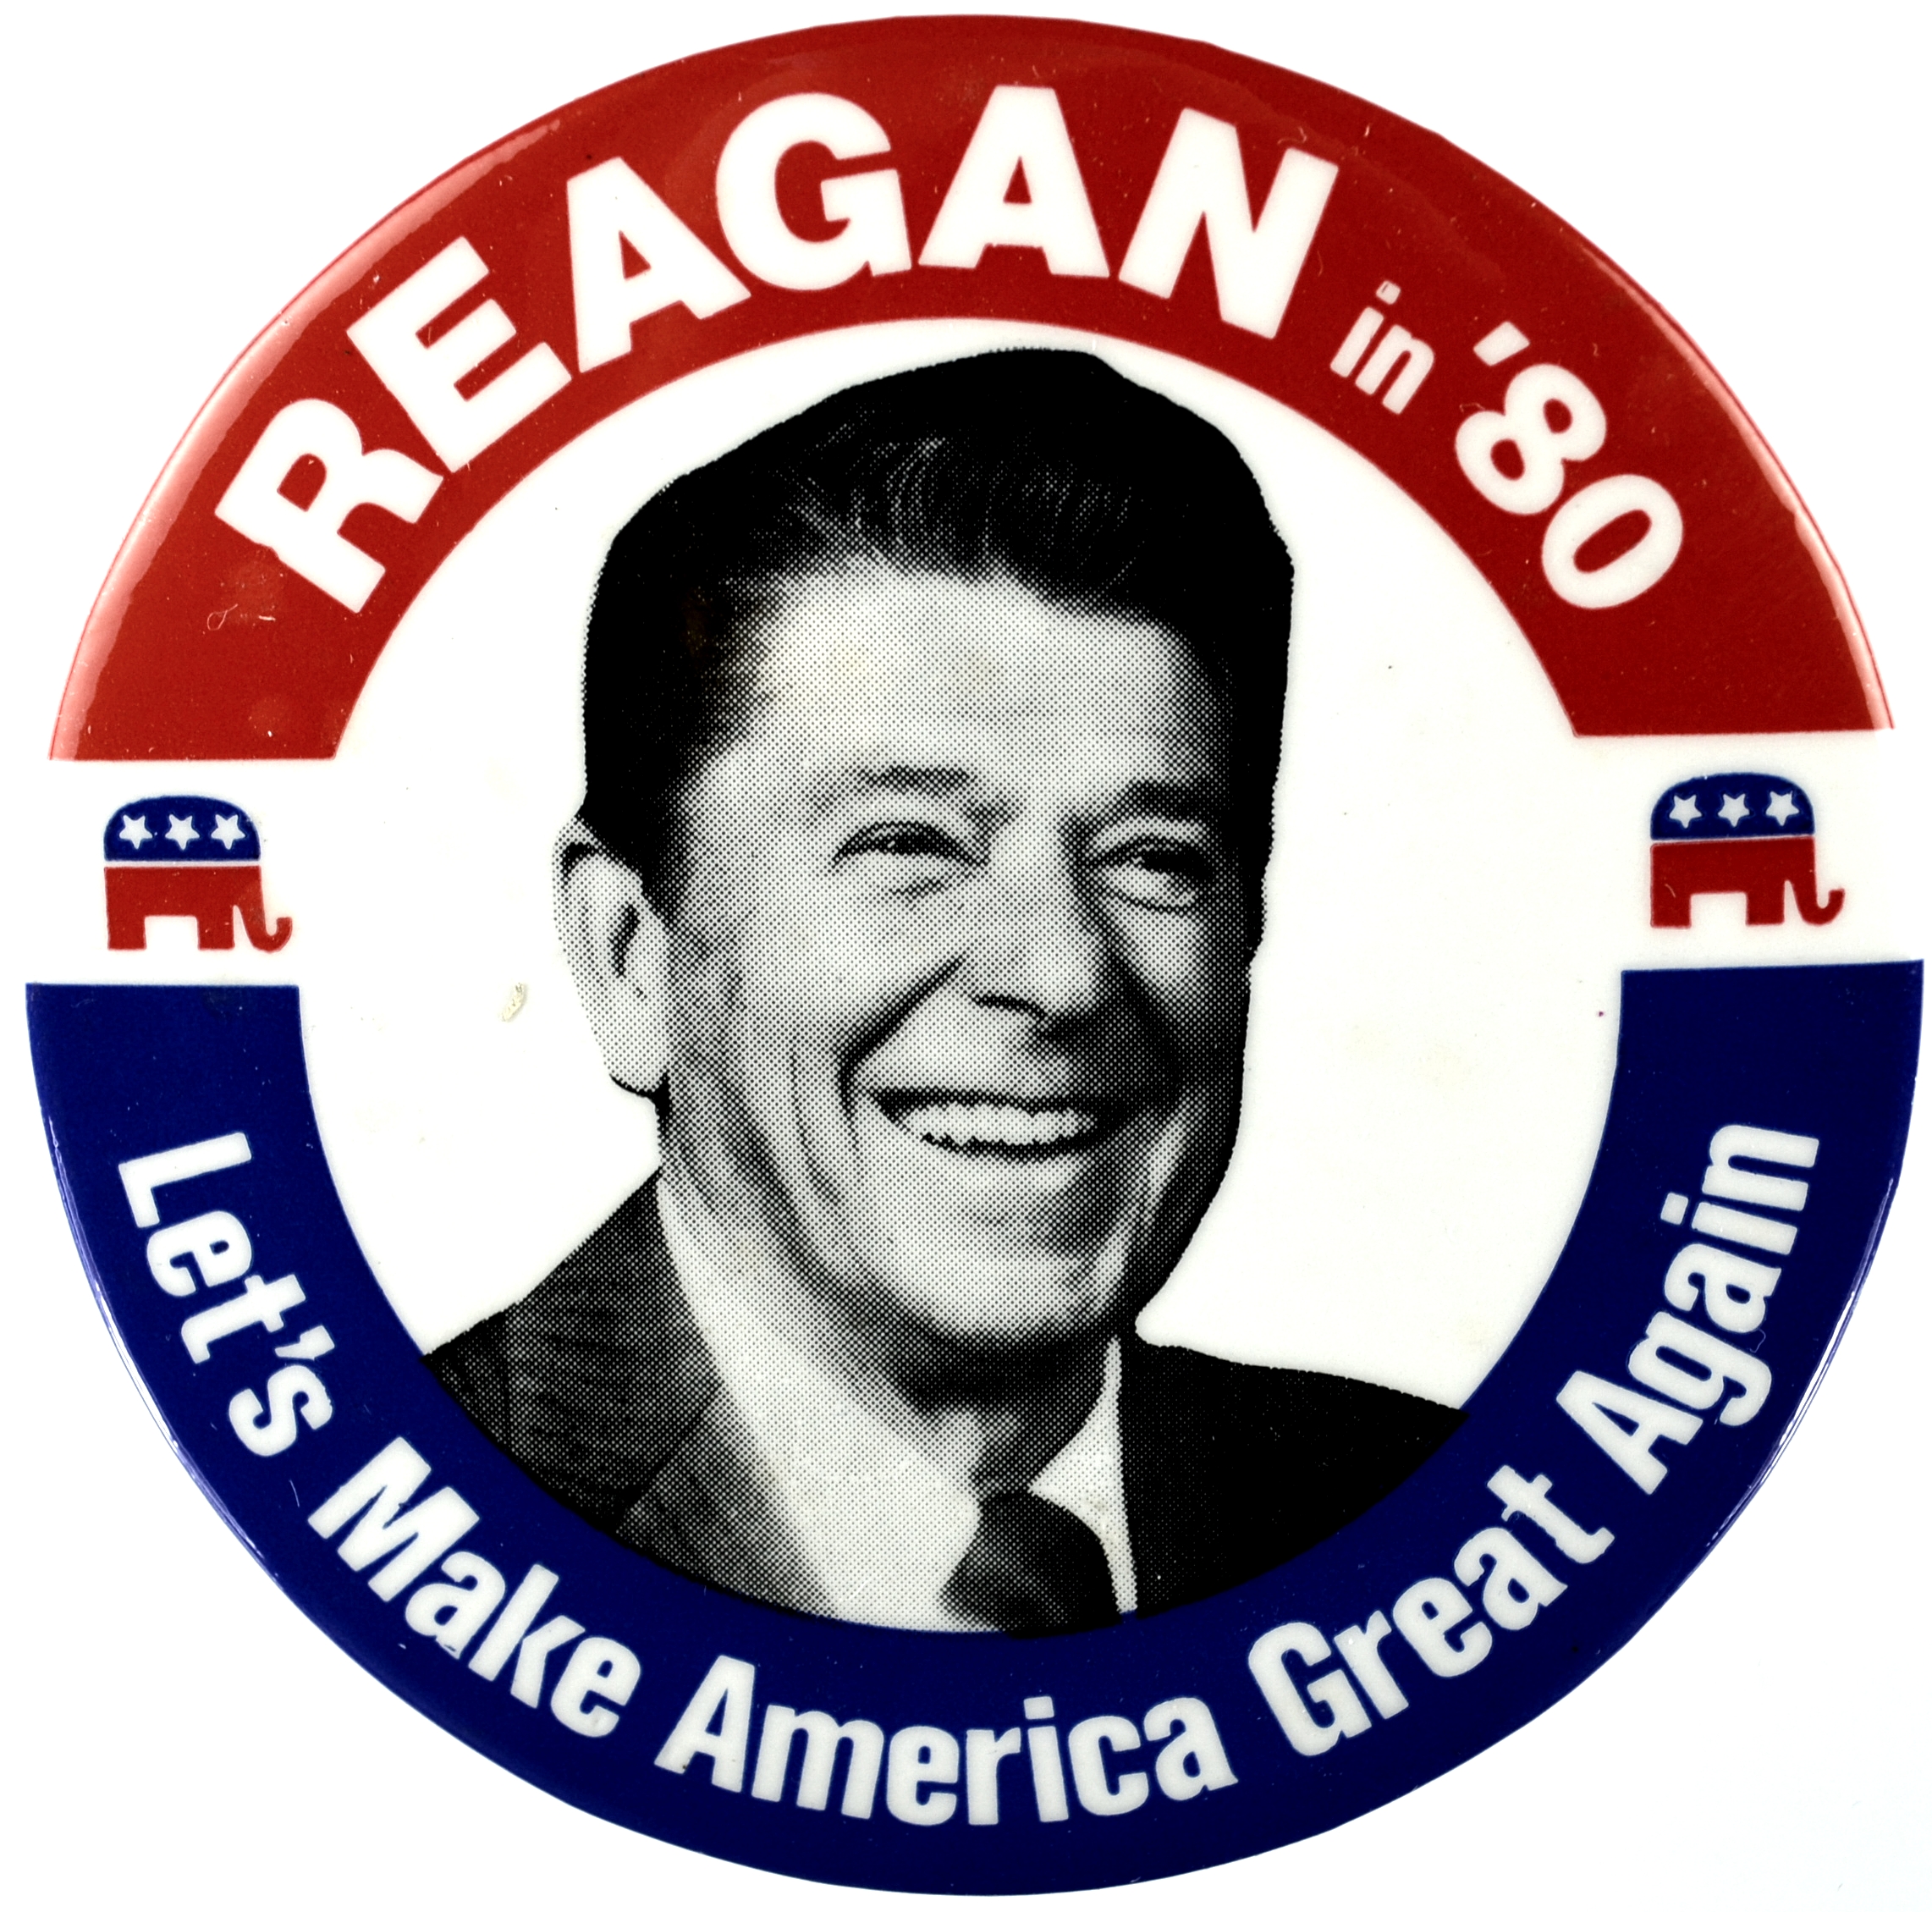 reagan let's make america great again